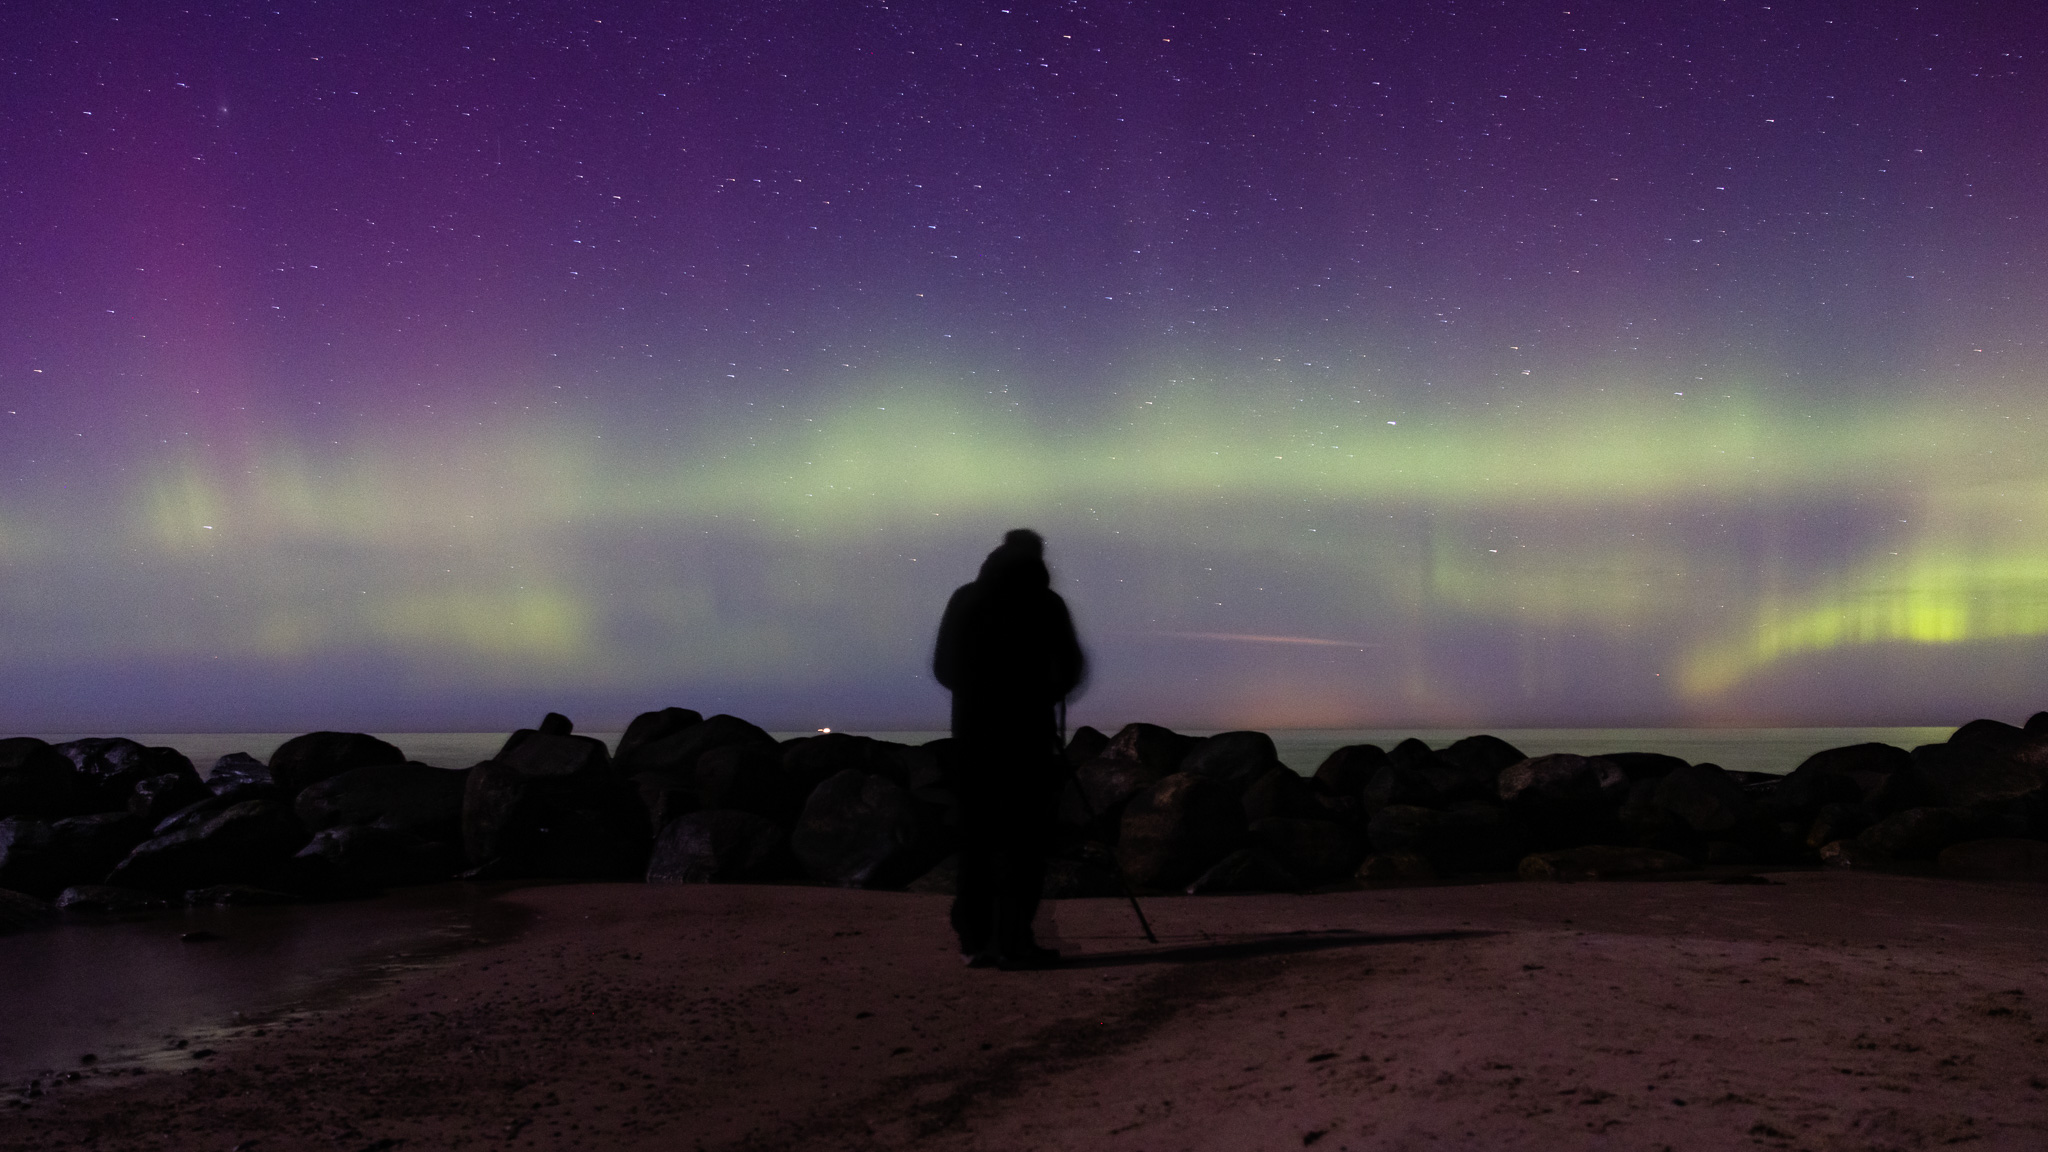 aurora-borealis-northern-lights-denmark-gilleleje-gegenwind-astro-photography-3